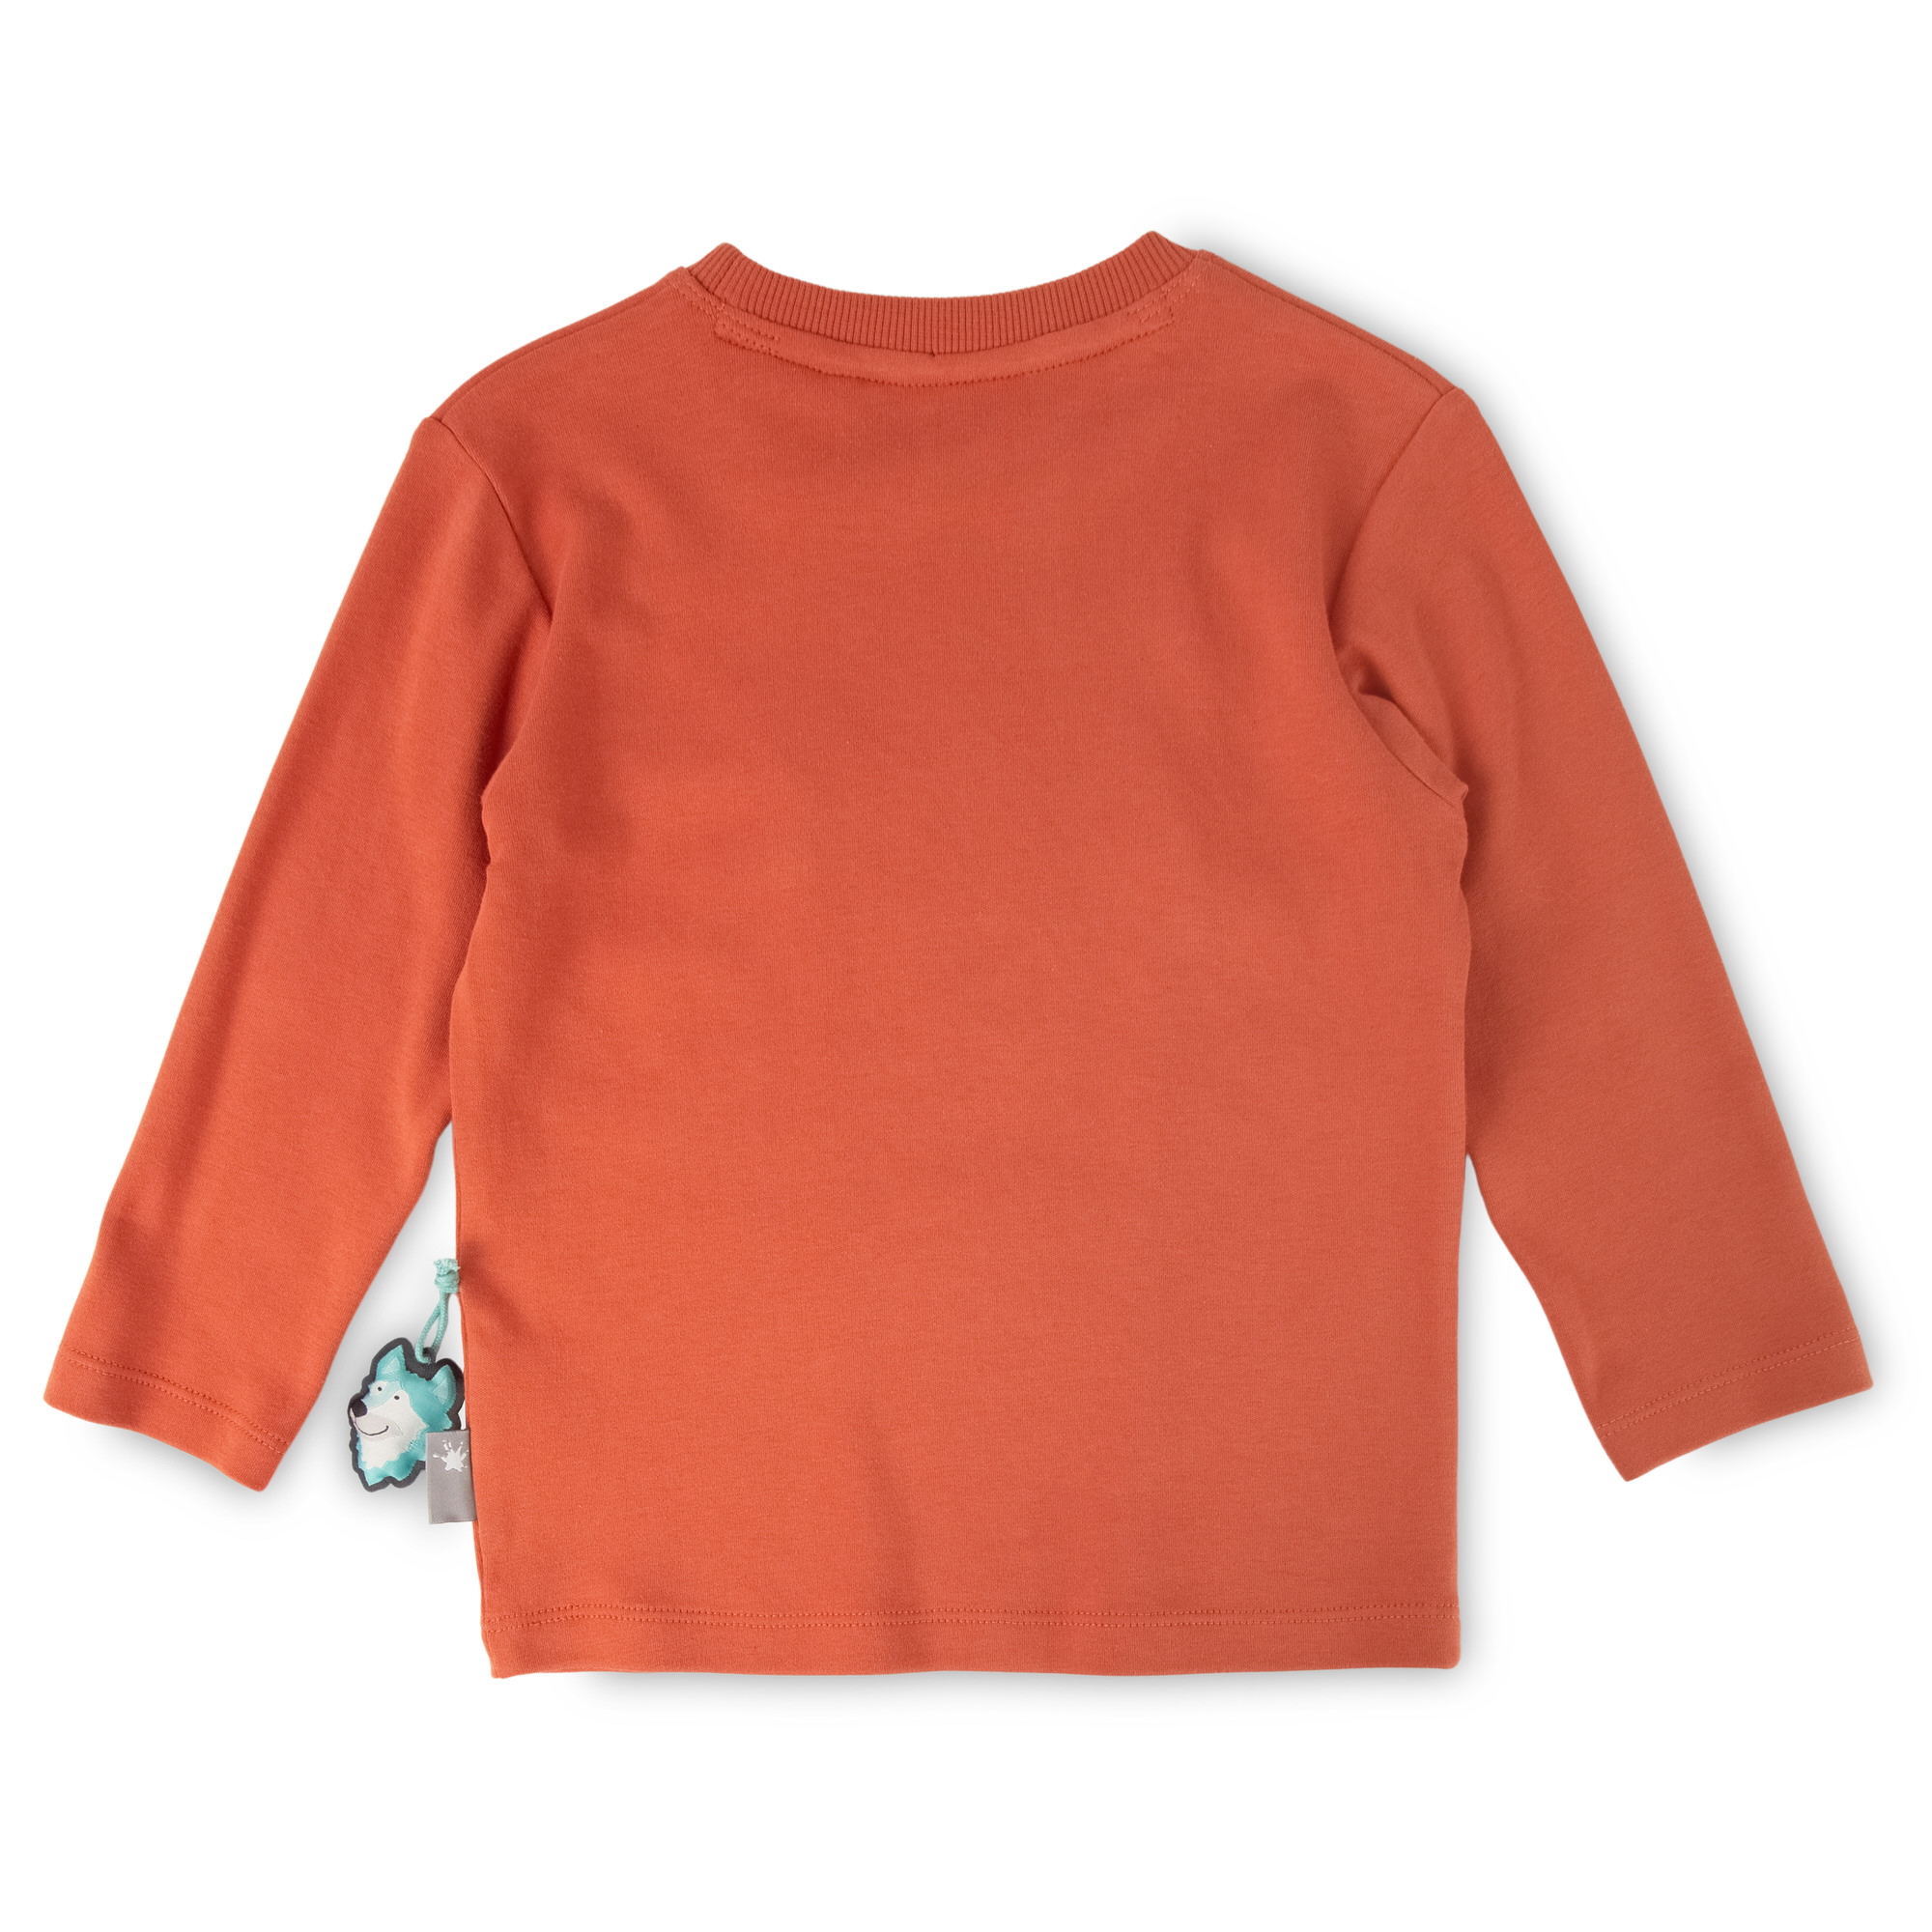 Kinder Langarmshirt mit Wal Motiv, orange